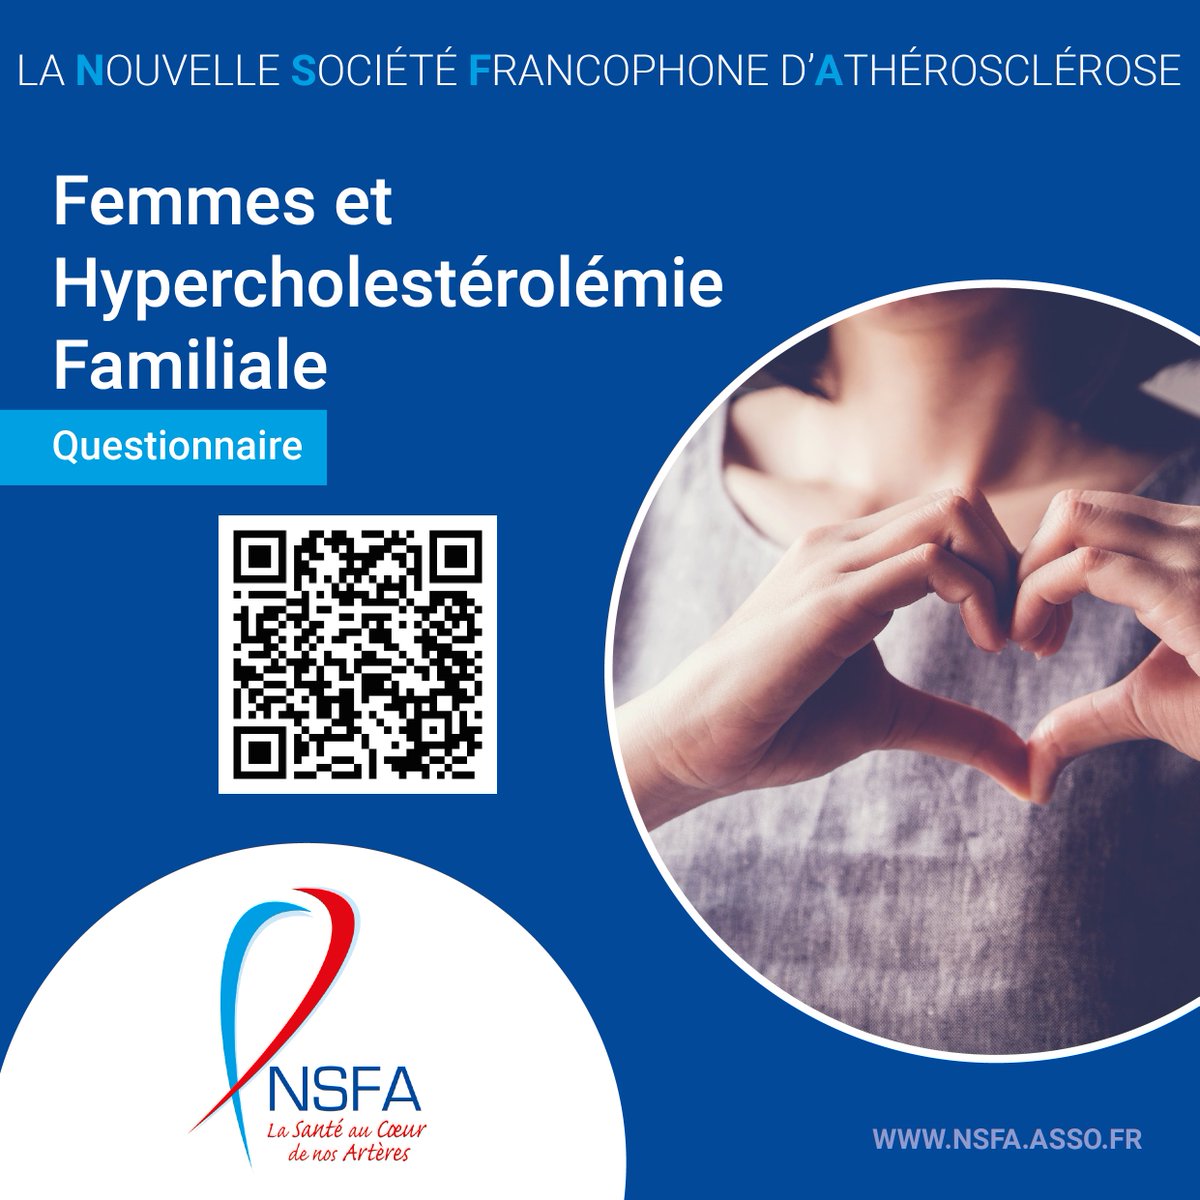 Cette enquête sur les femmes atteintes d’hypercholestérolémie familiale (HF) est menée dans plusieurs pays et est le résultat d’une collaboration entre des organisations de patients atteints d’HF en Europe et dans d’autres pays. 👉 nsfa.asso.fr/patients/quest…